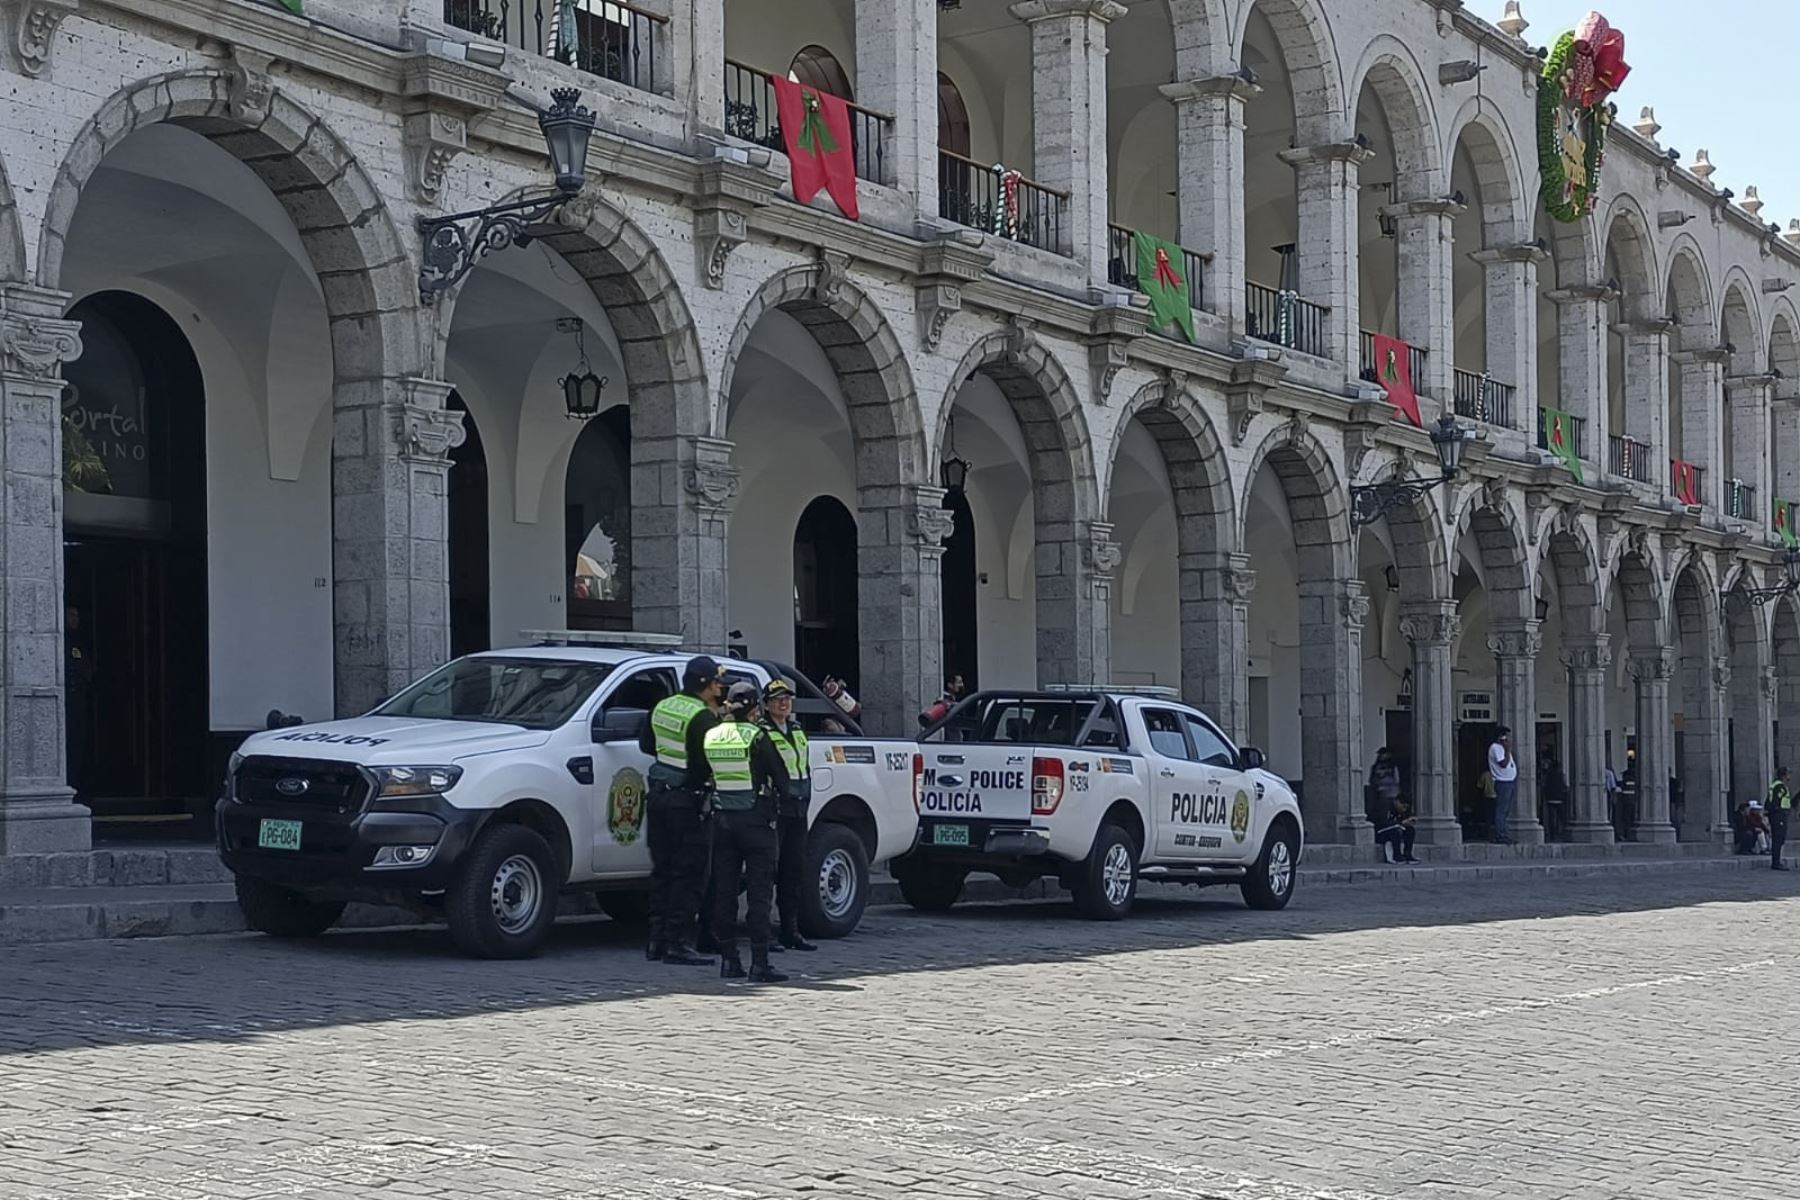 La Policía patrullará las calles de Arequipa durante el feriado largo por Semana Santa para garantizar la seguridad de la población y turistas. ANDINA/Difusión